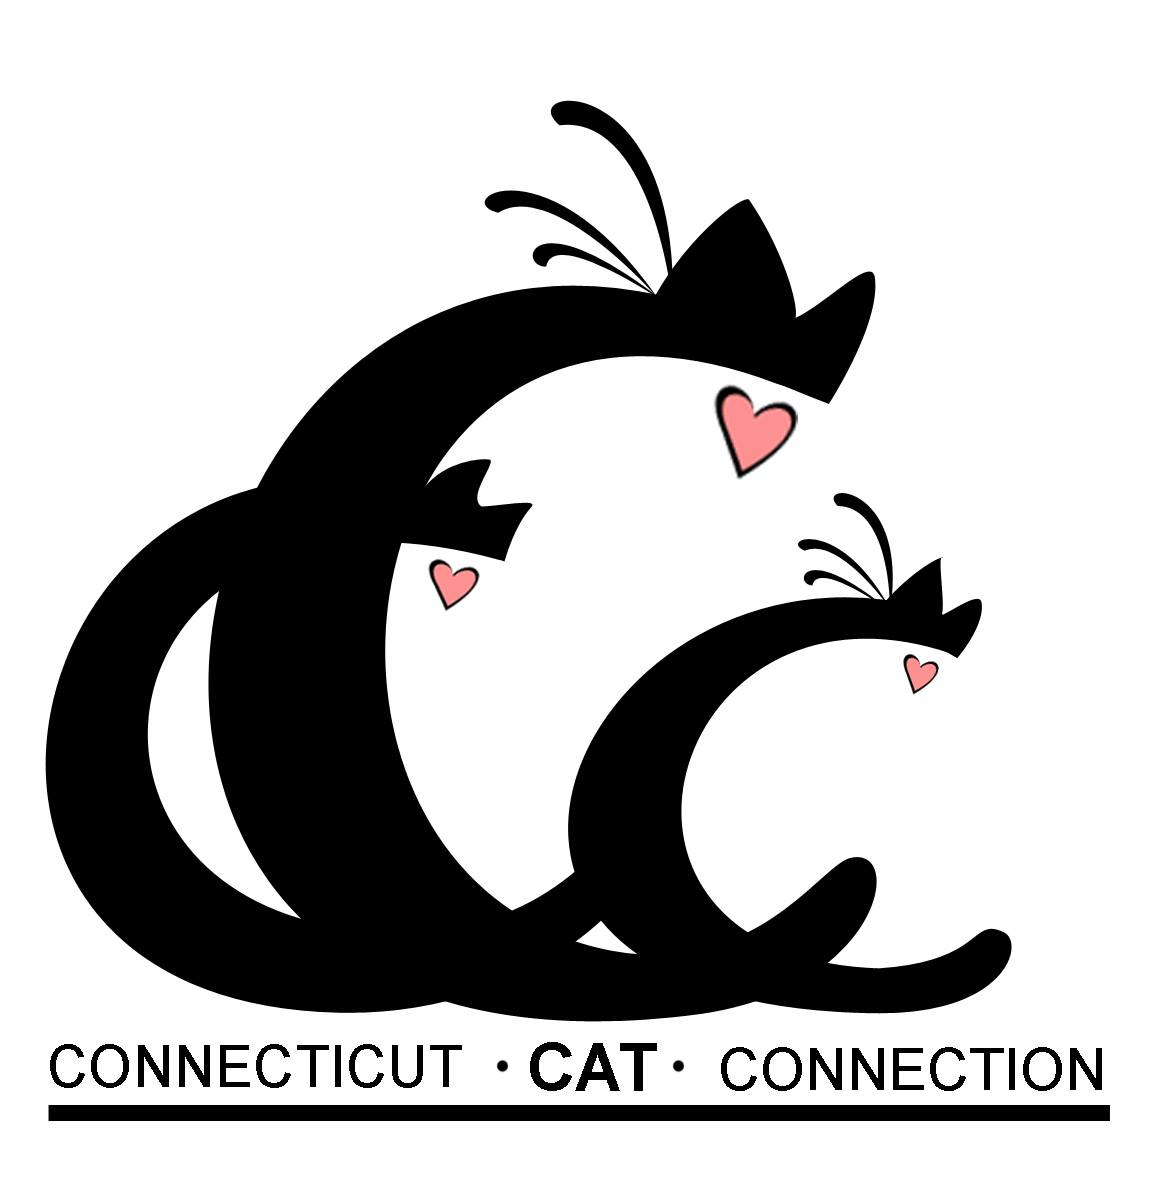 Connecticut Cat Connection logo